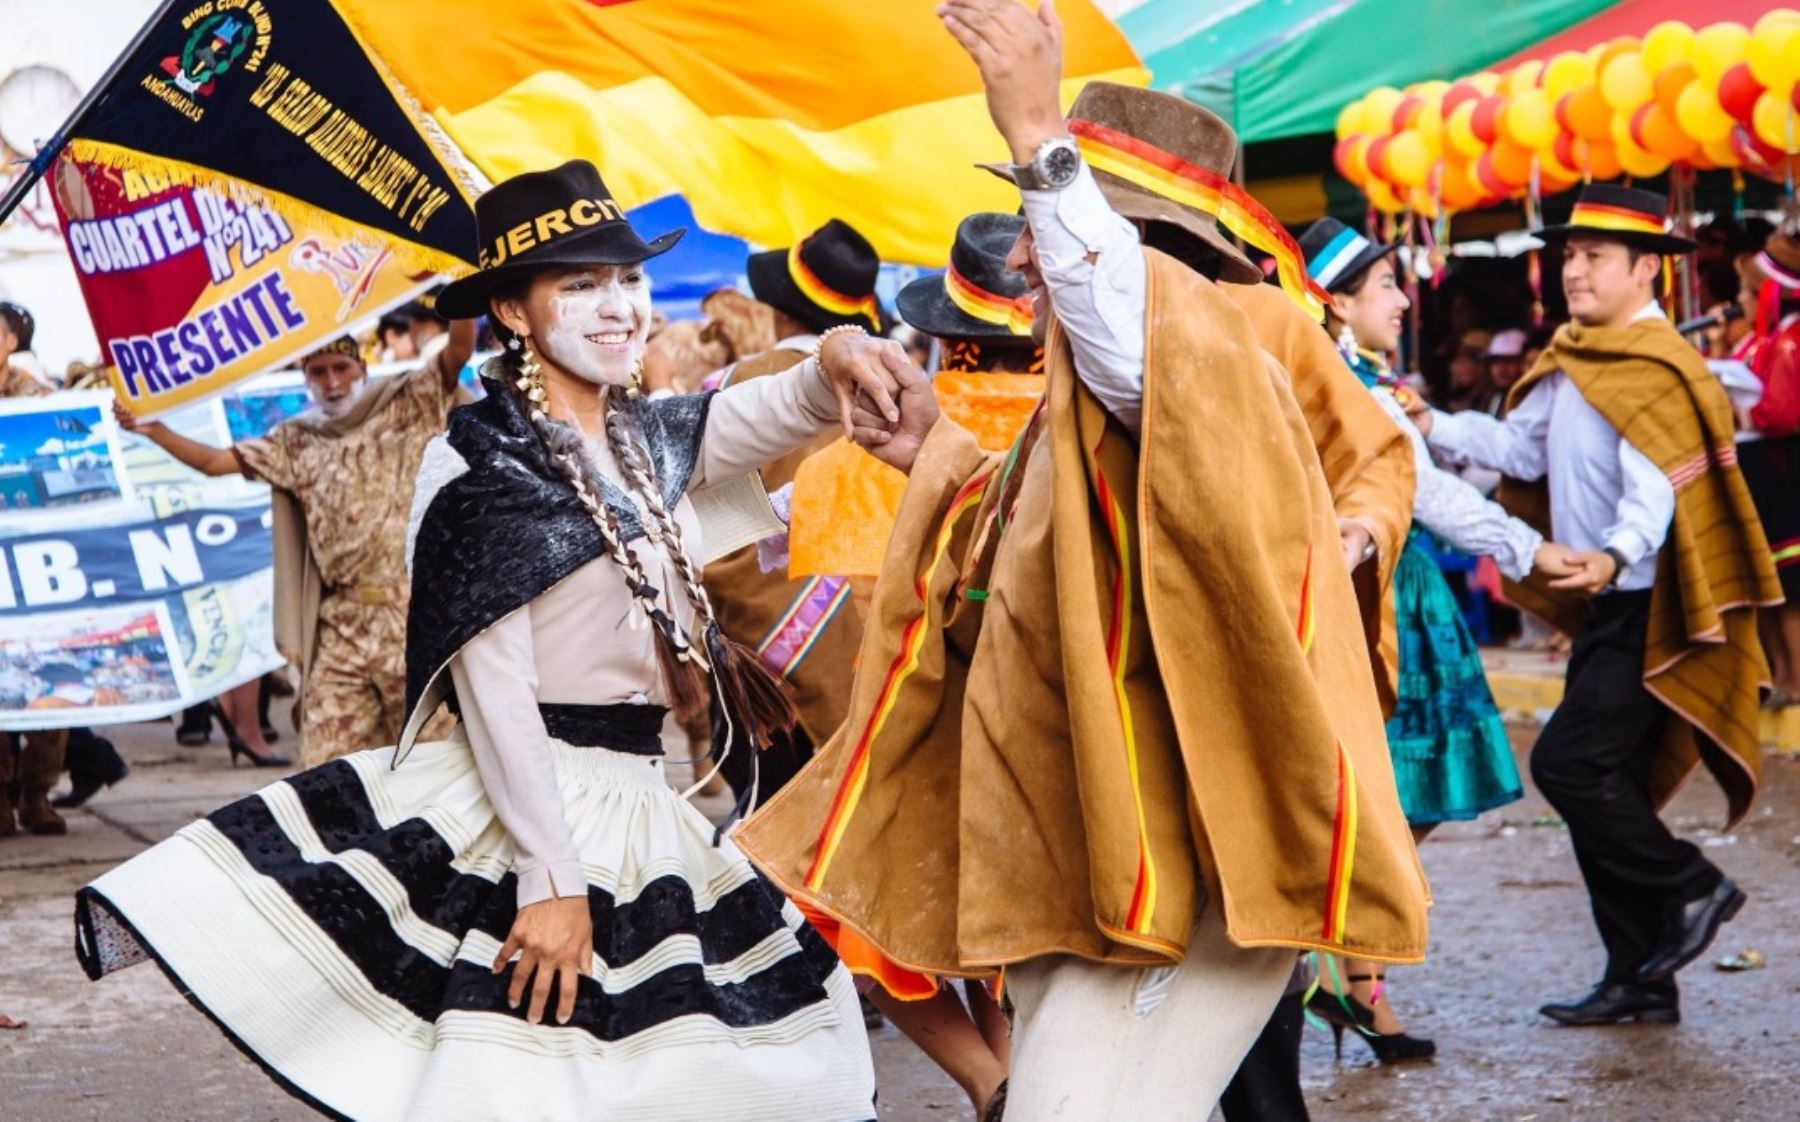 Carnaval Pukllay 2017, una de las celebraciones culturales más emblemáticas de la región Apurímac.